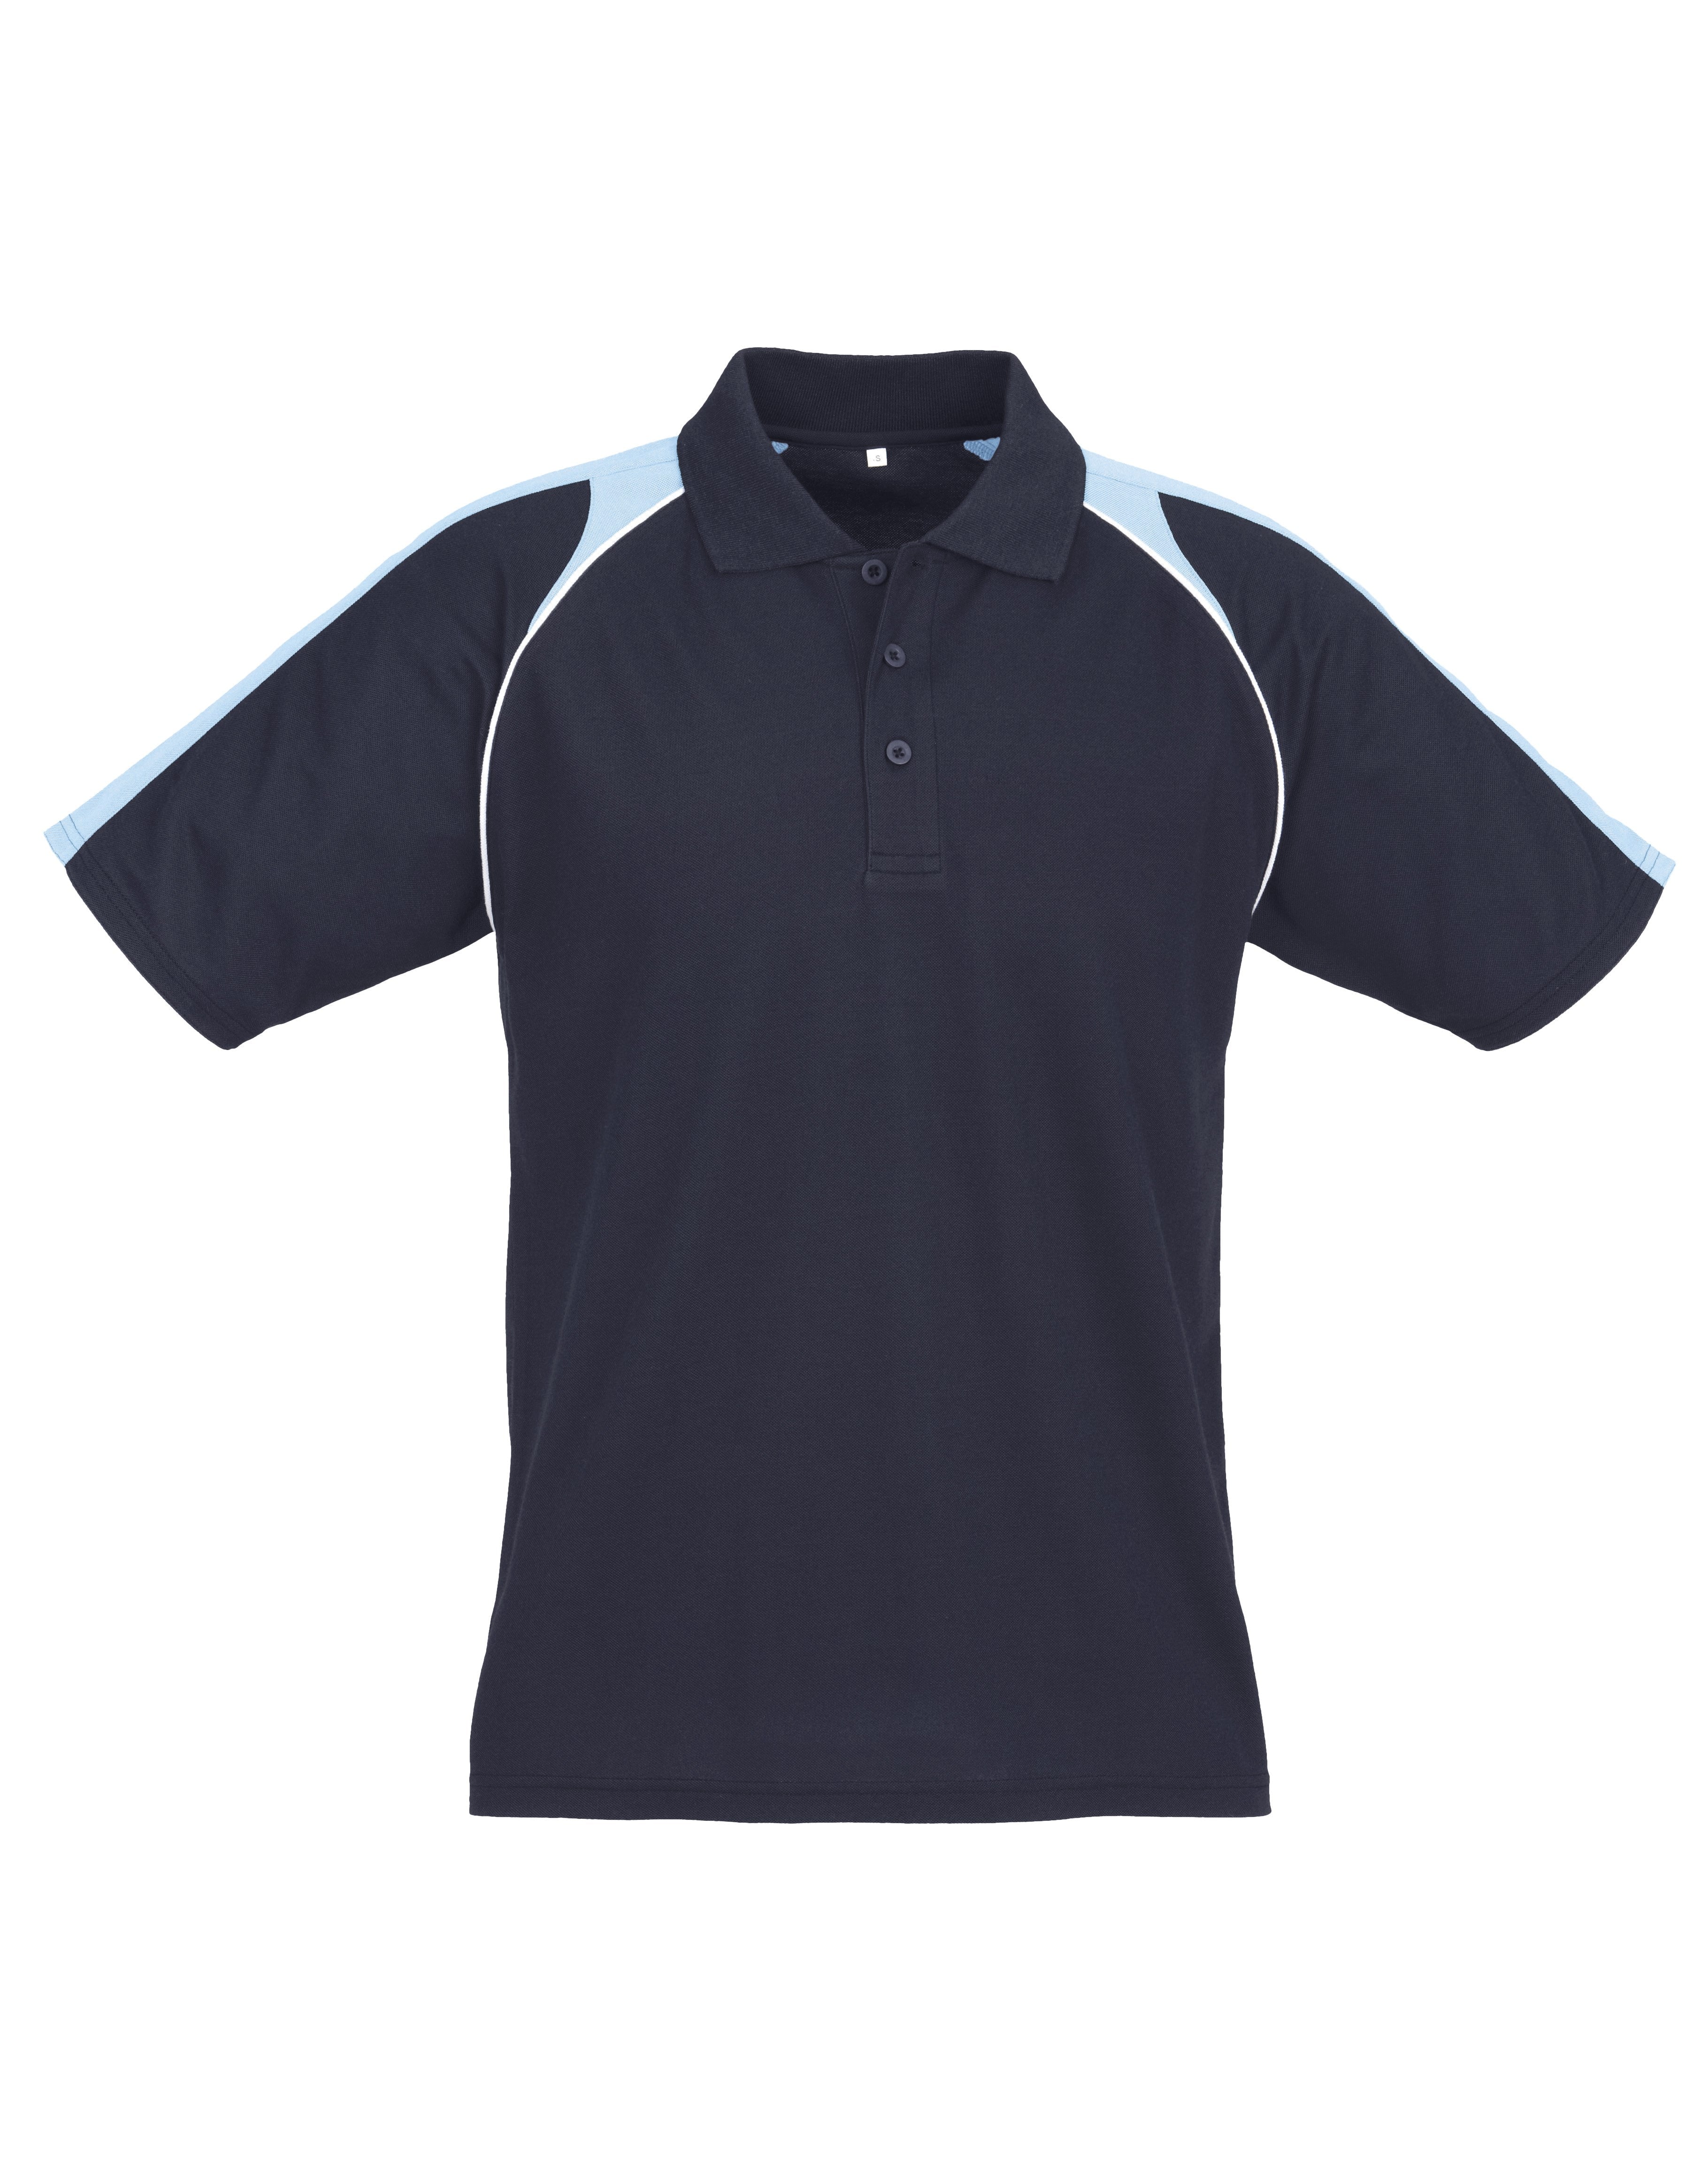 Mens Triton Golf Shirt - Black Teal Only-Shirts & Tops-2XL-Navy-N